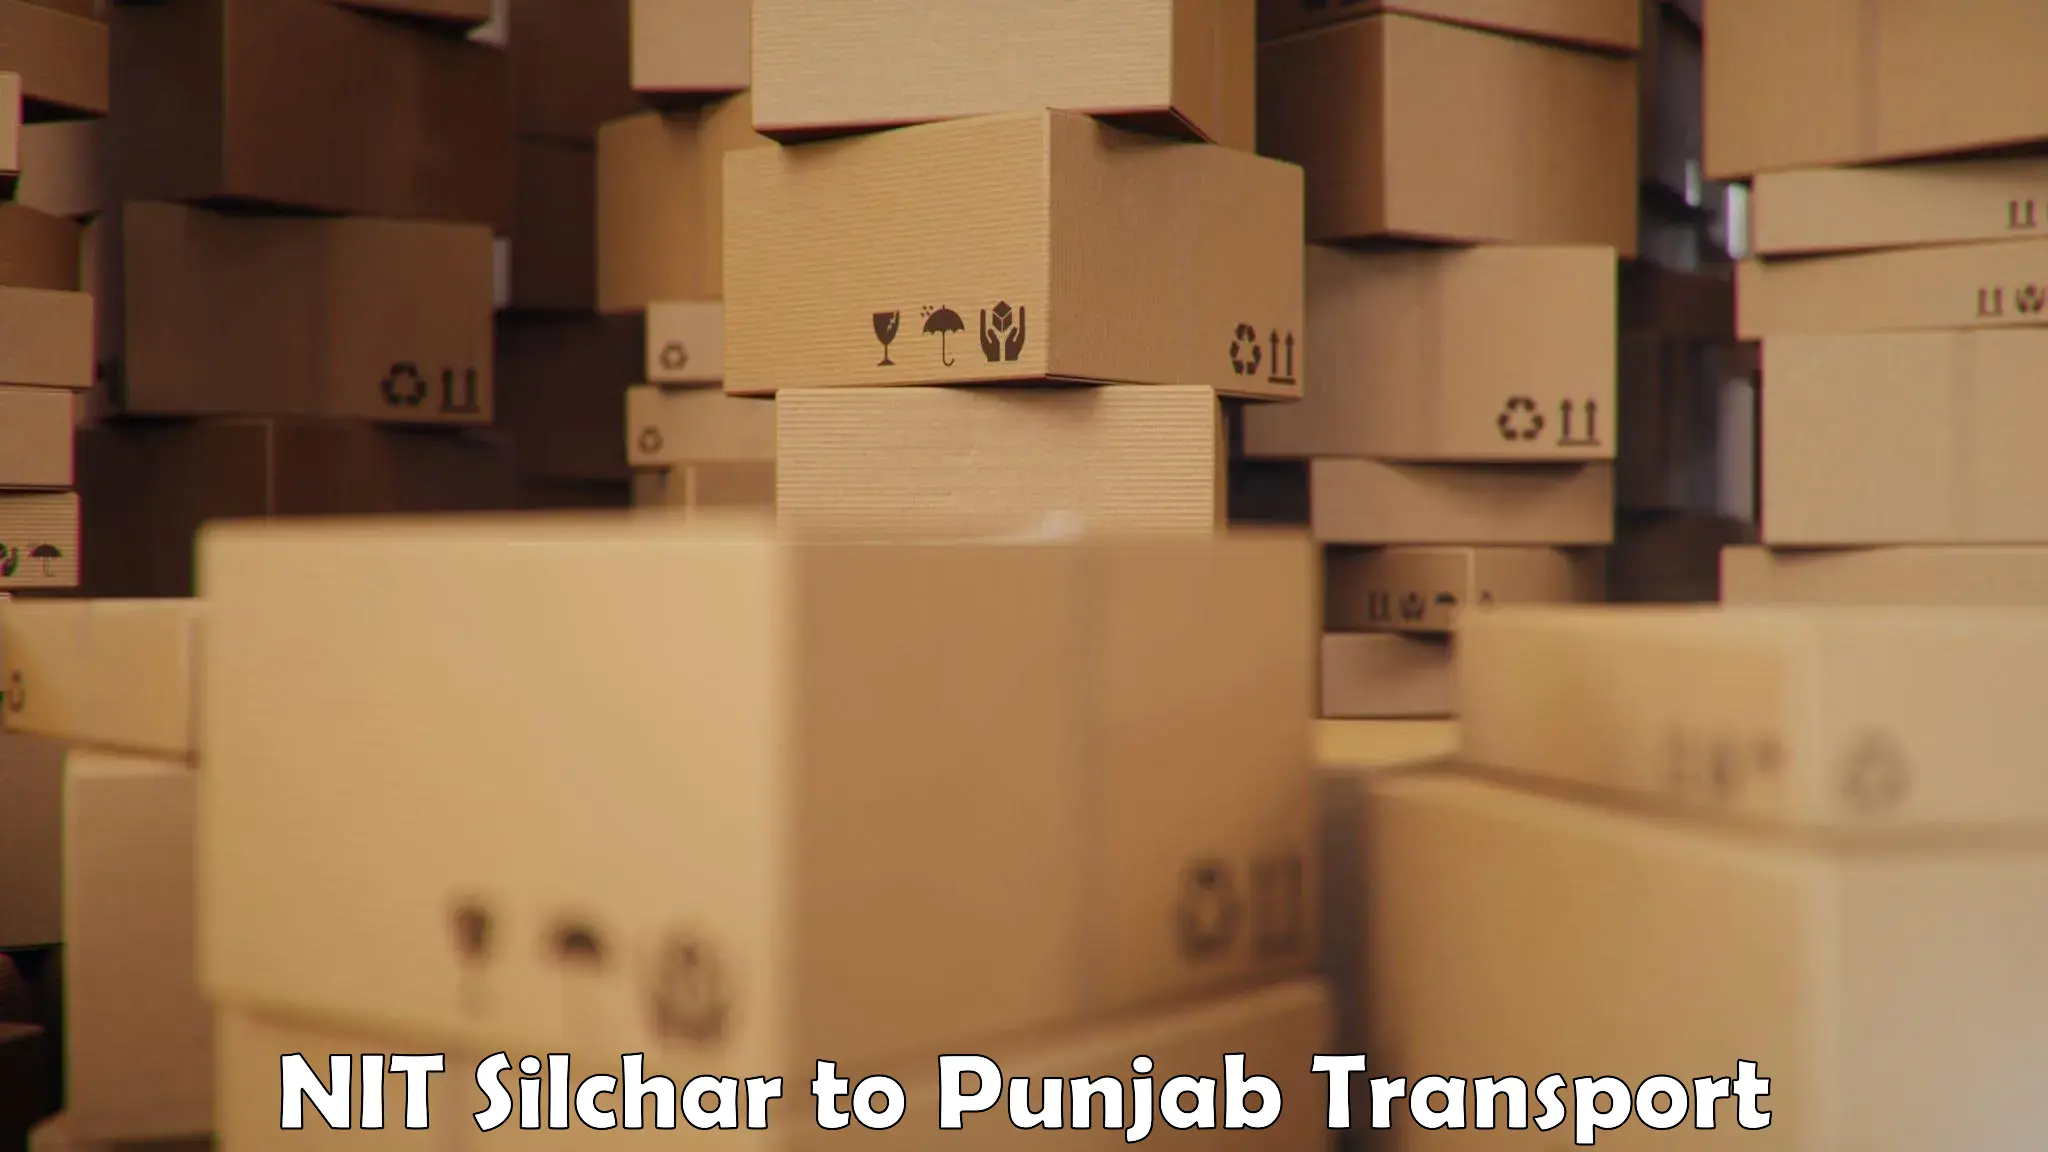 Daily parcel service transport NIT Silchar to Malerkotla